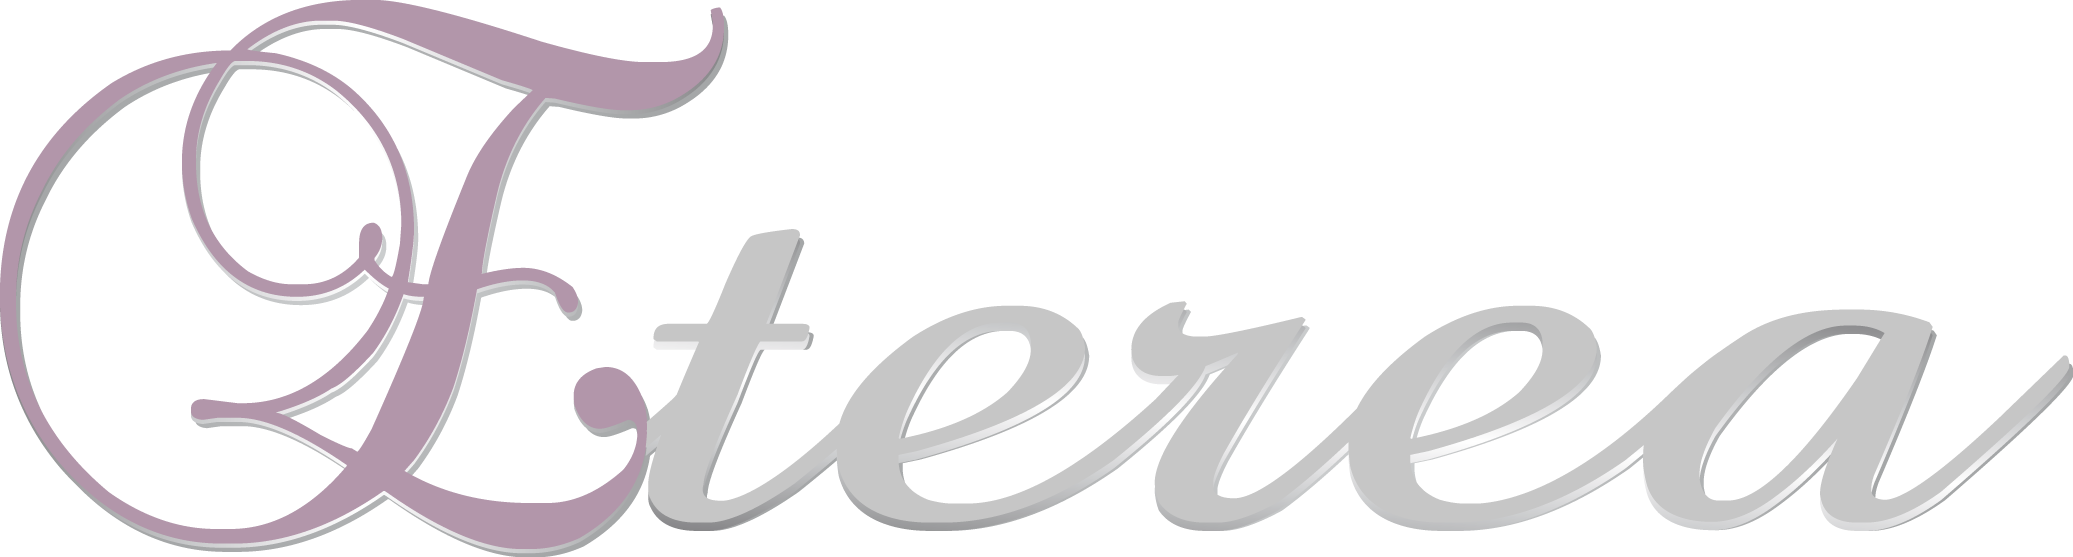 Logo Eterea - Estetica e benessere